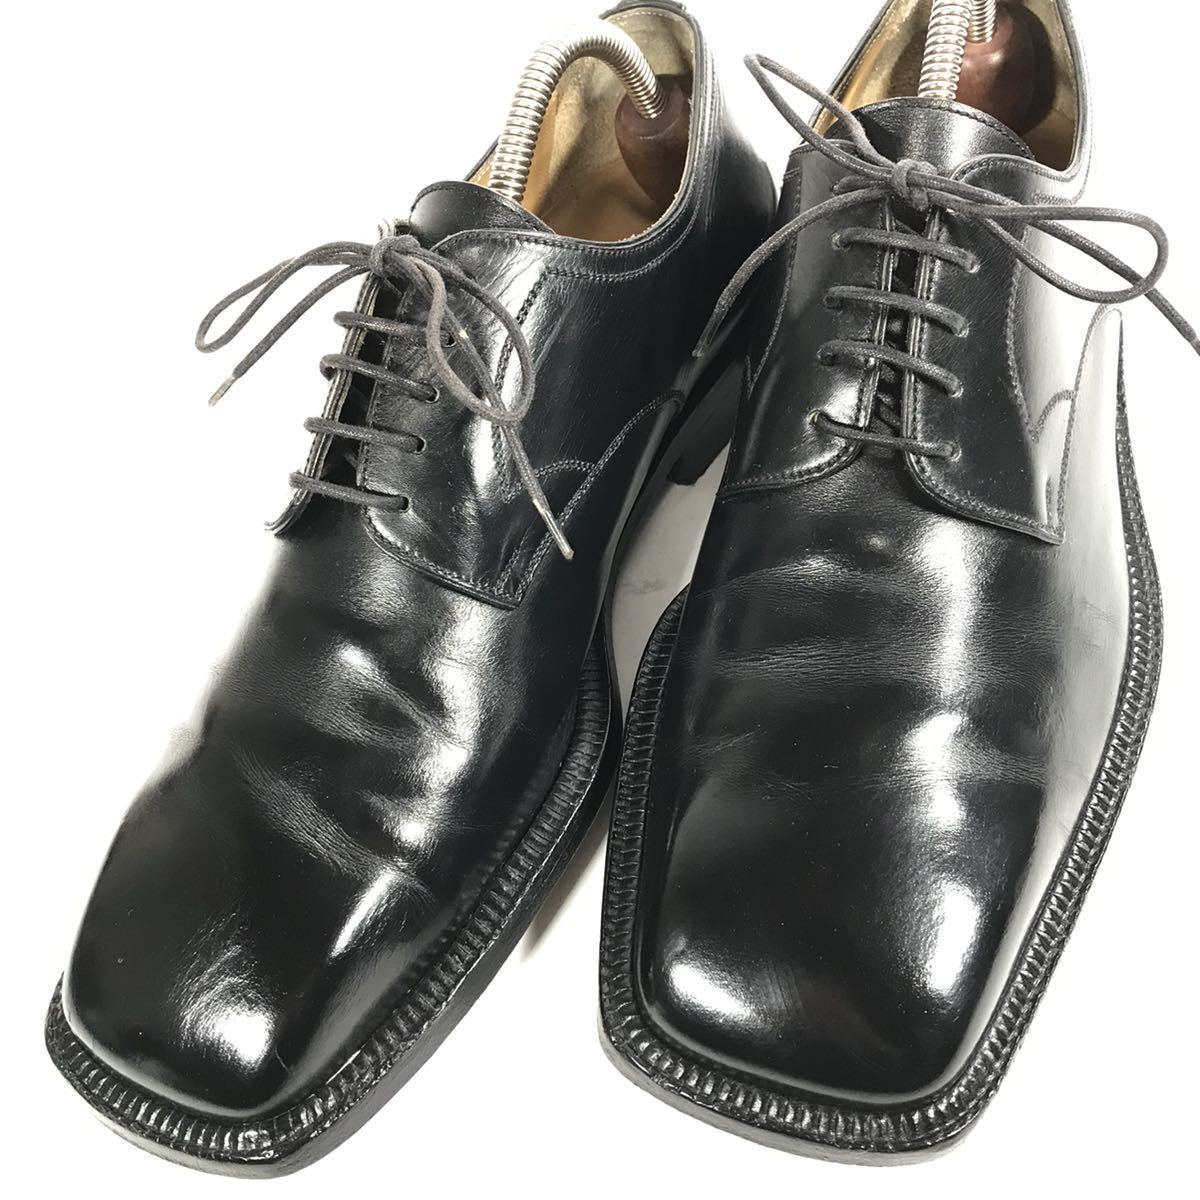 【ルイヴィトン】本物 LOUIS VUITTON 靴 25cm 黒 プレーントゥ ビジネスシューズ 外羽根式 本革 レザー 男性用 メンズ イタリア製 6_画像8